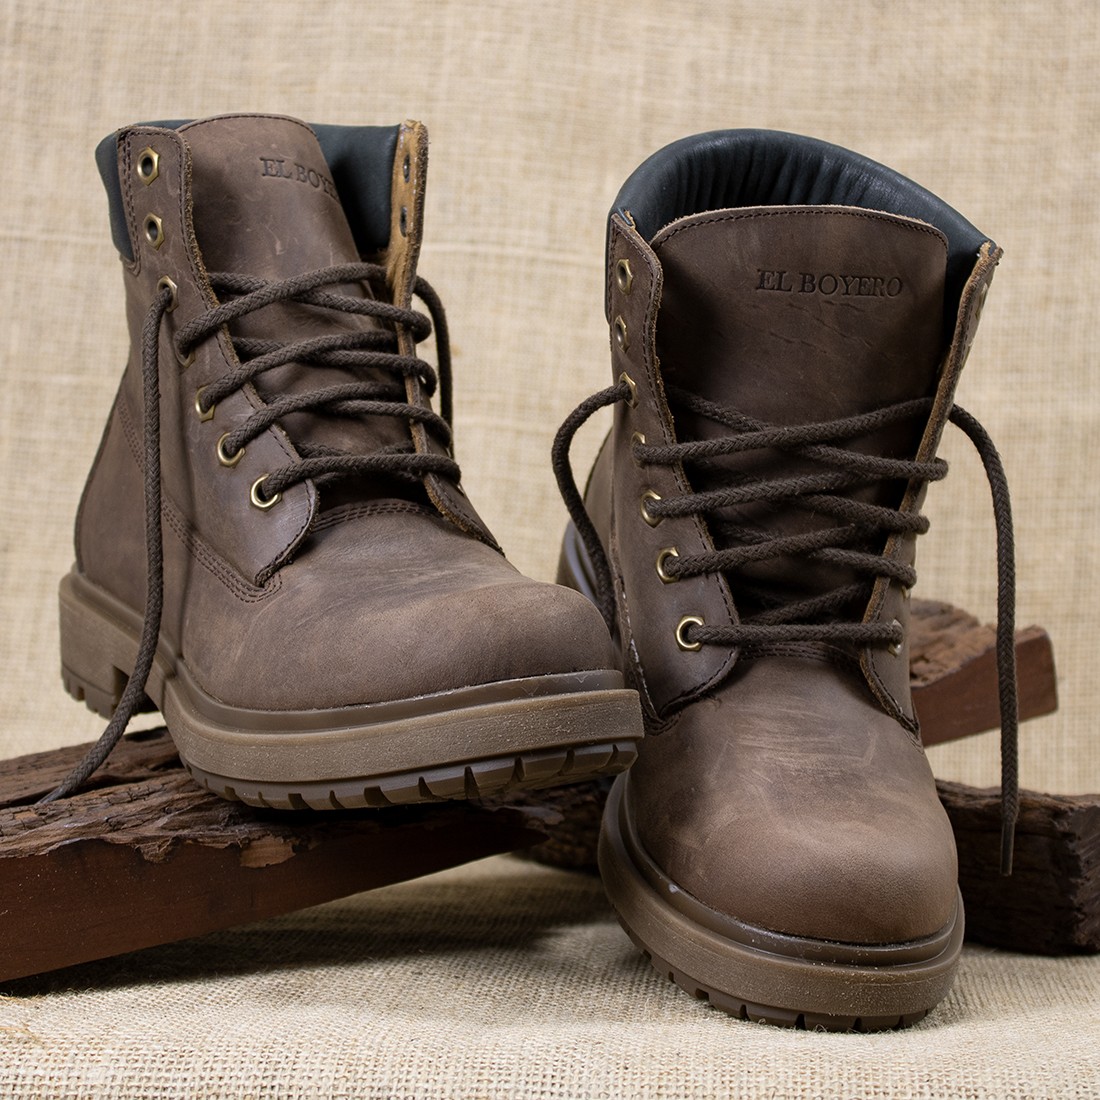 Men's nubuck laced boots |El Boyero